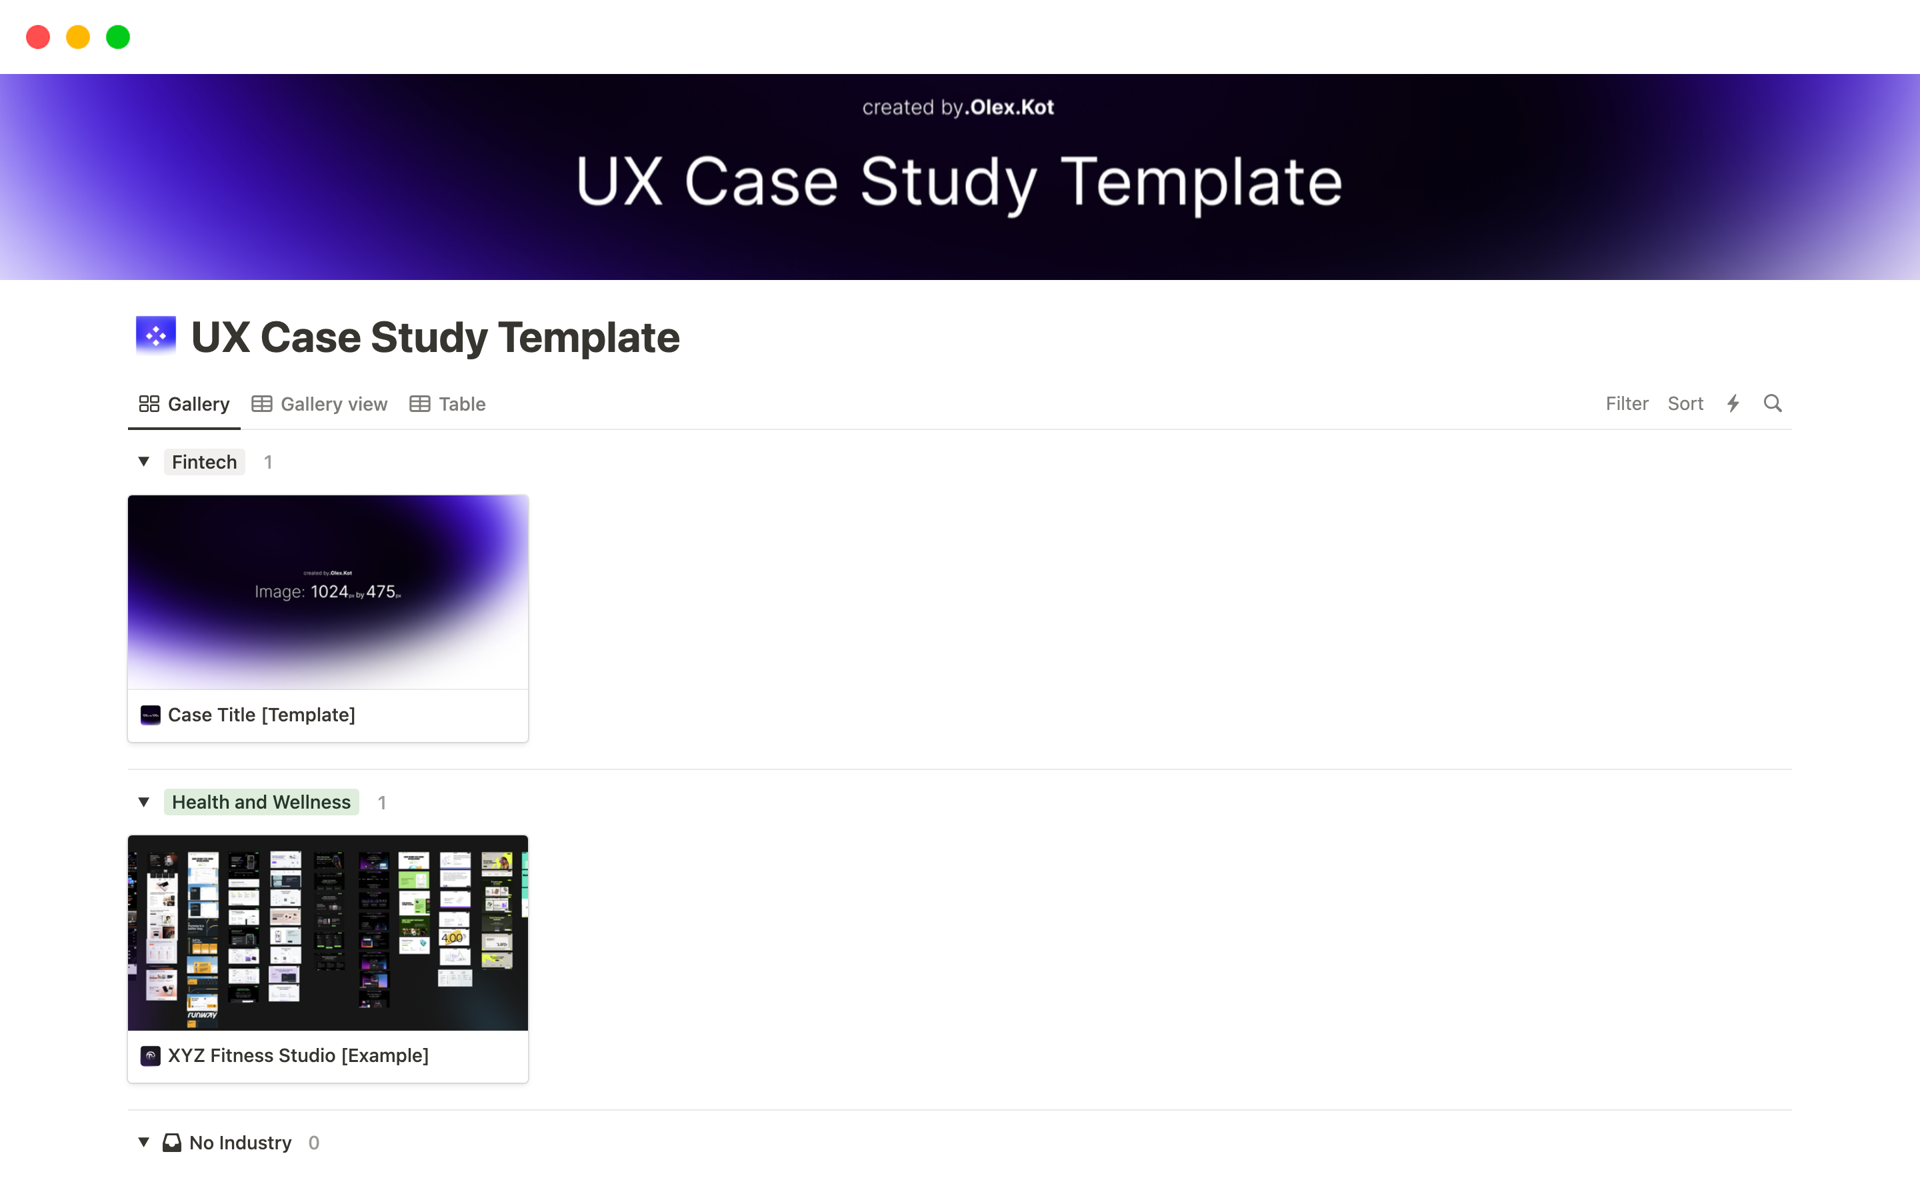 Aperçu du modèle de UX Case Study